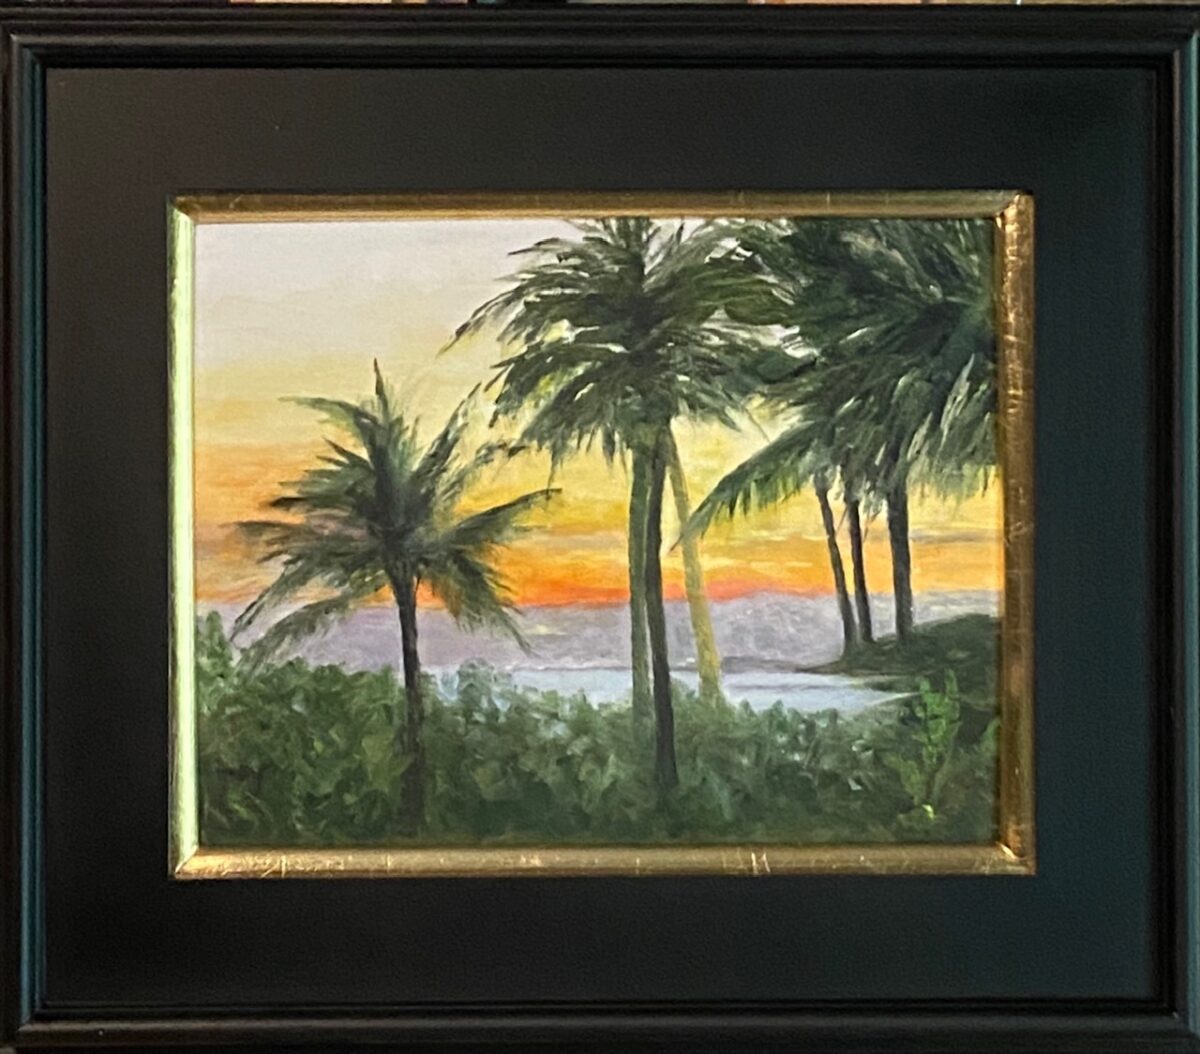 218 - Waikiki Sunset - 11x14 - Landscape - $255